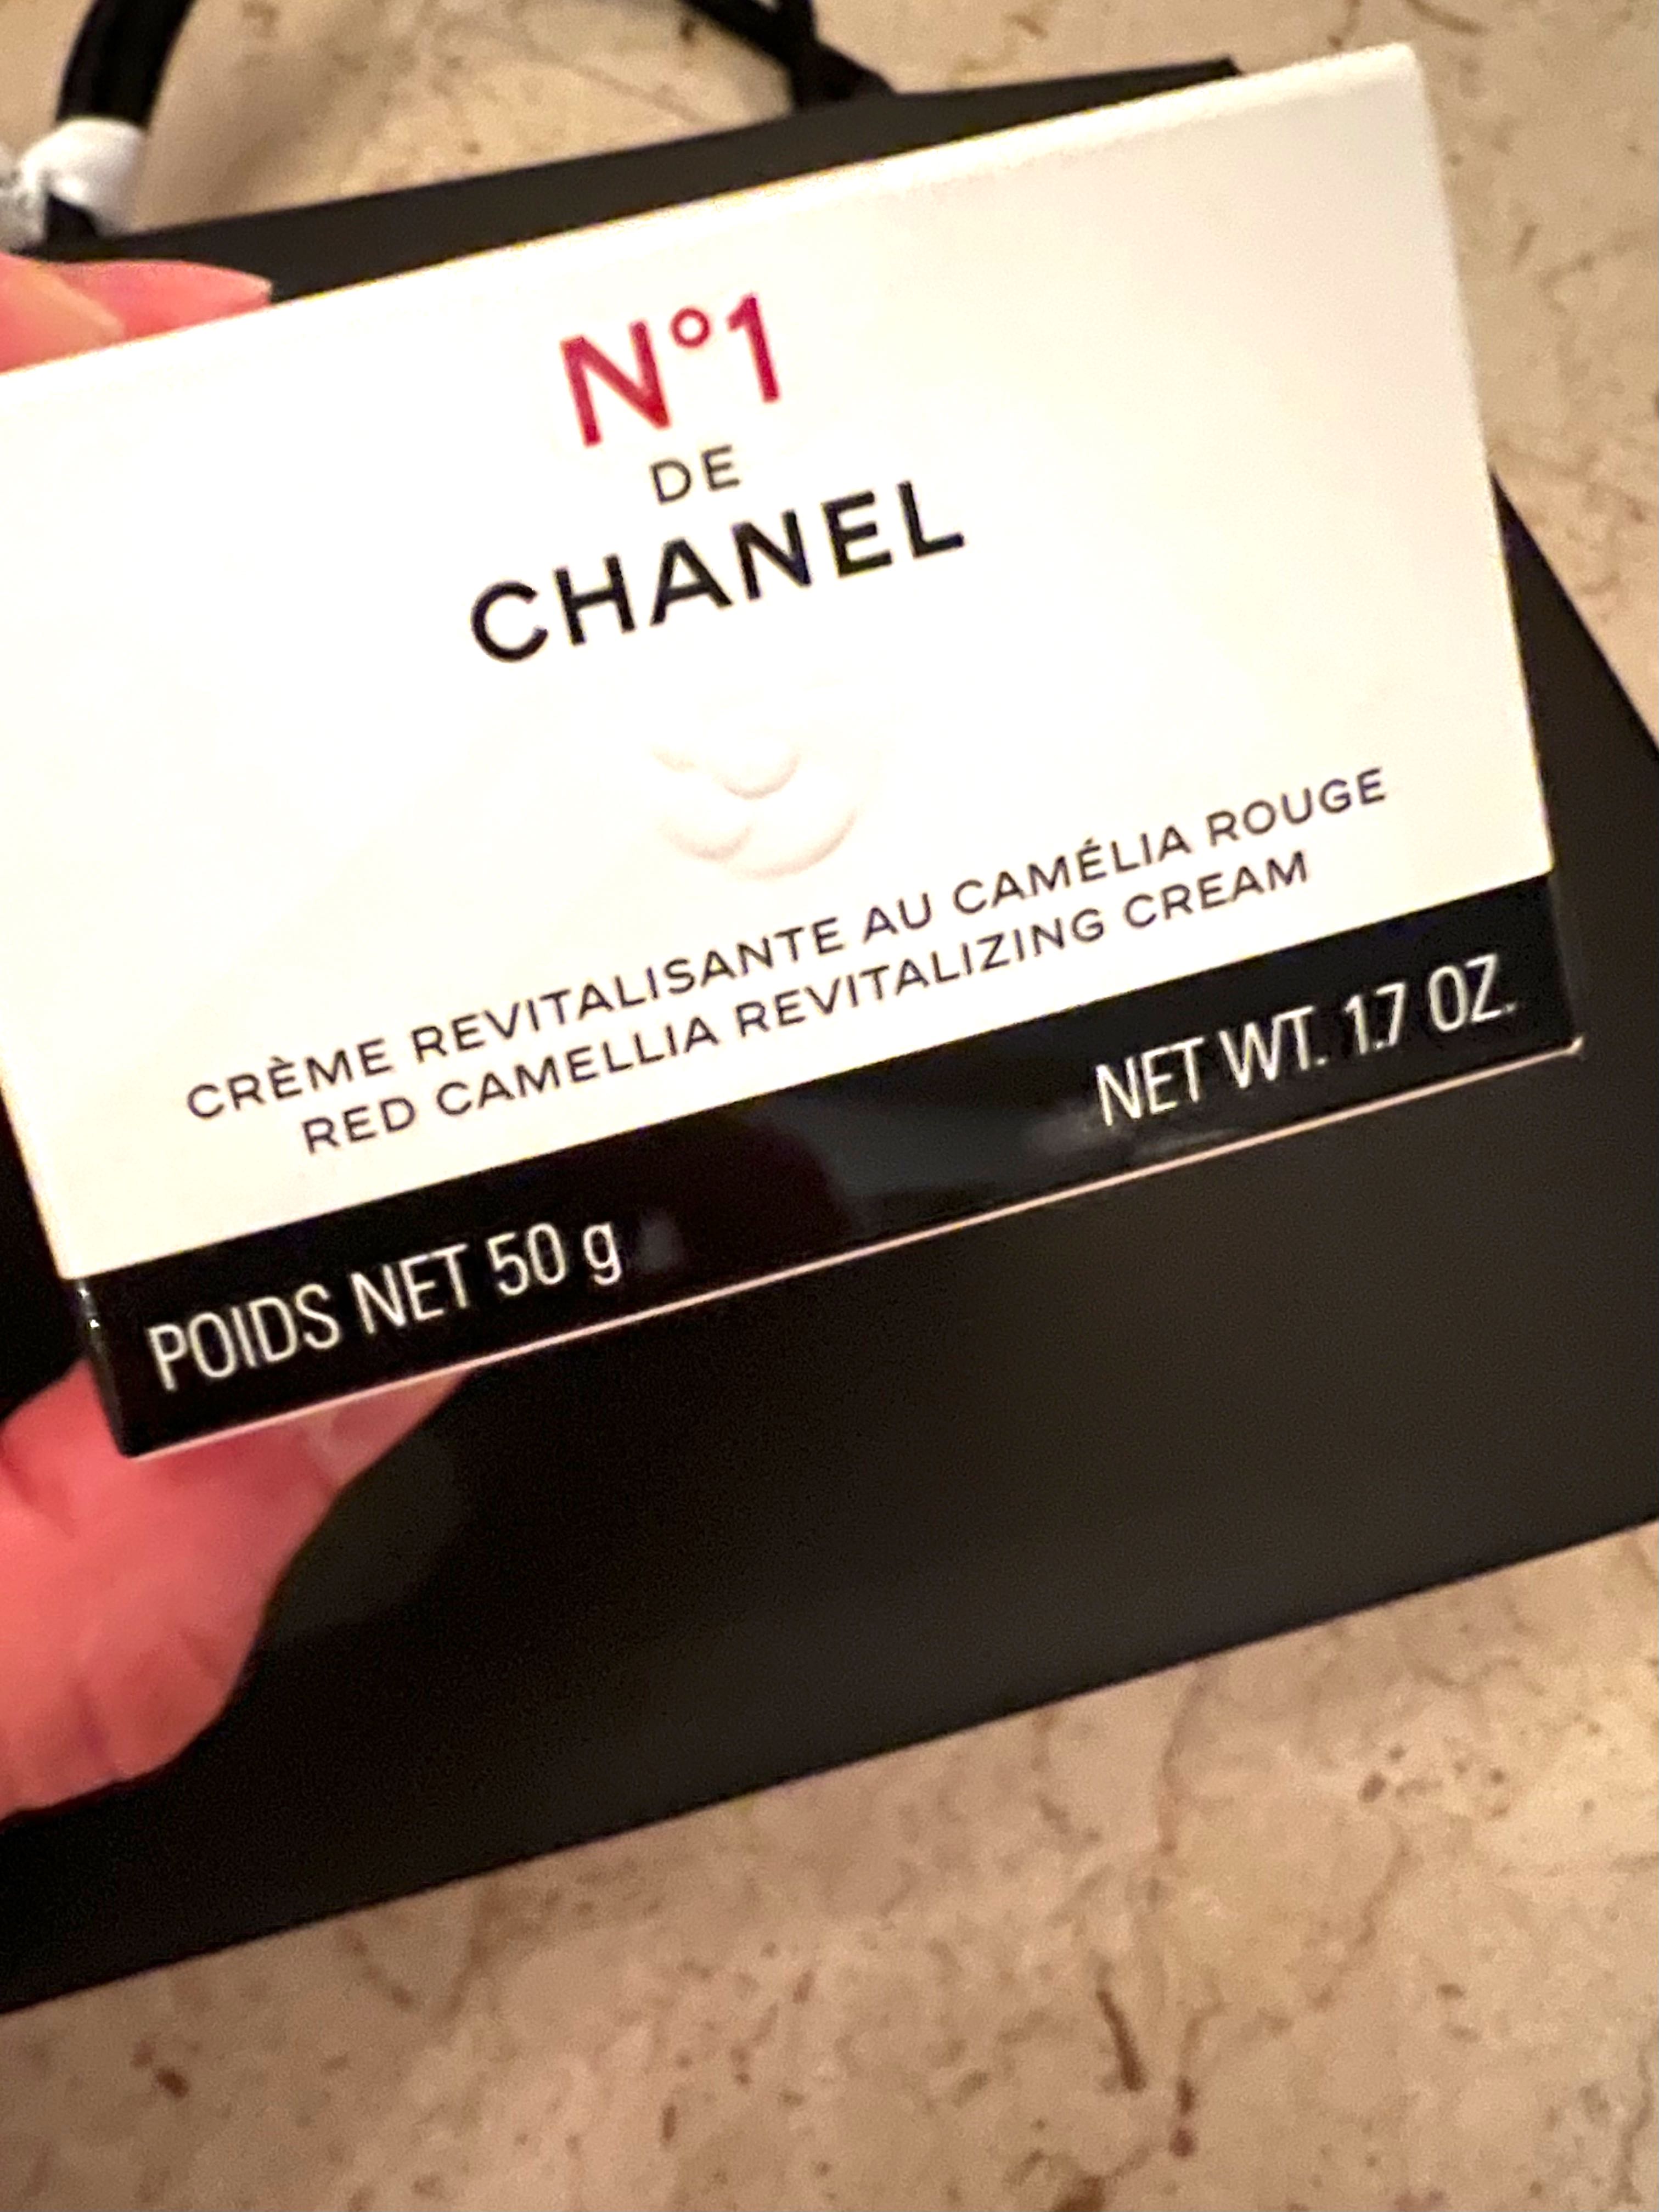 Bleu de Chanel Eau de Parfum 50ml